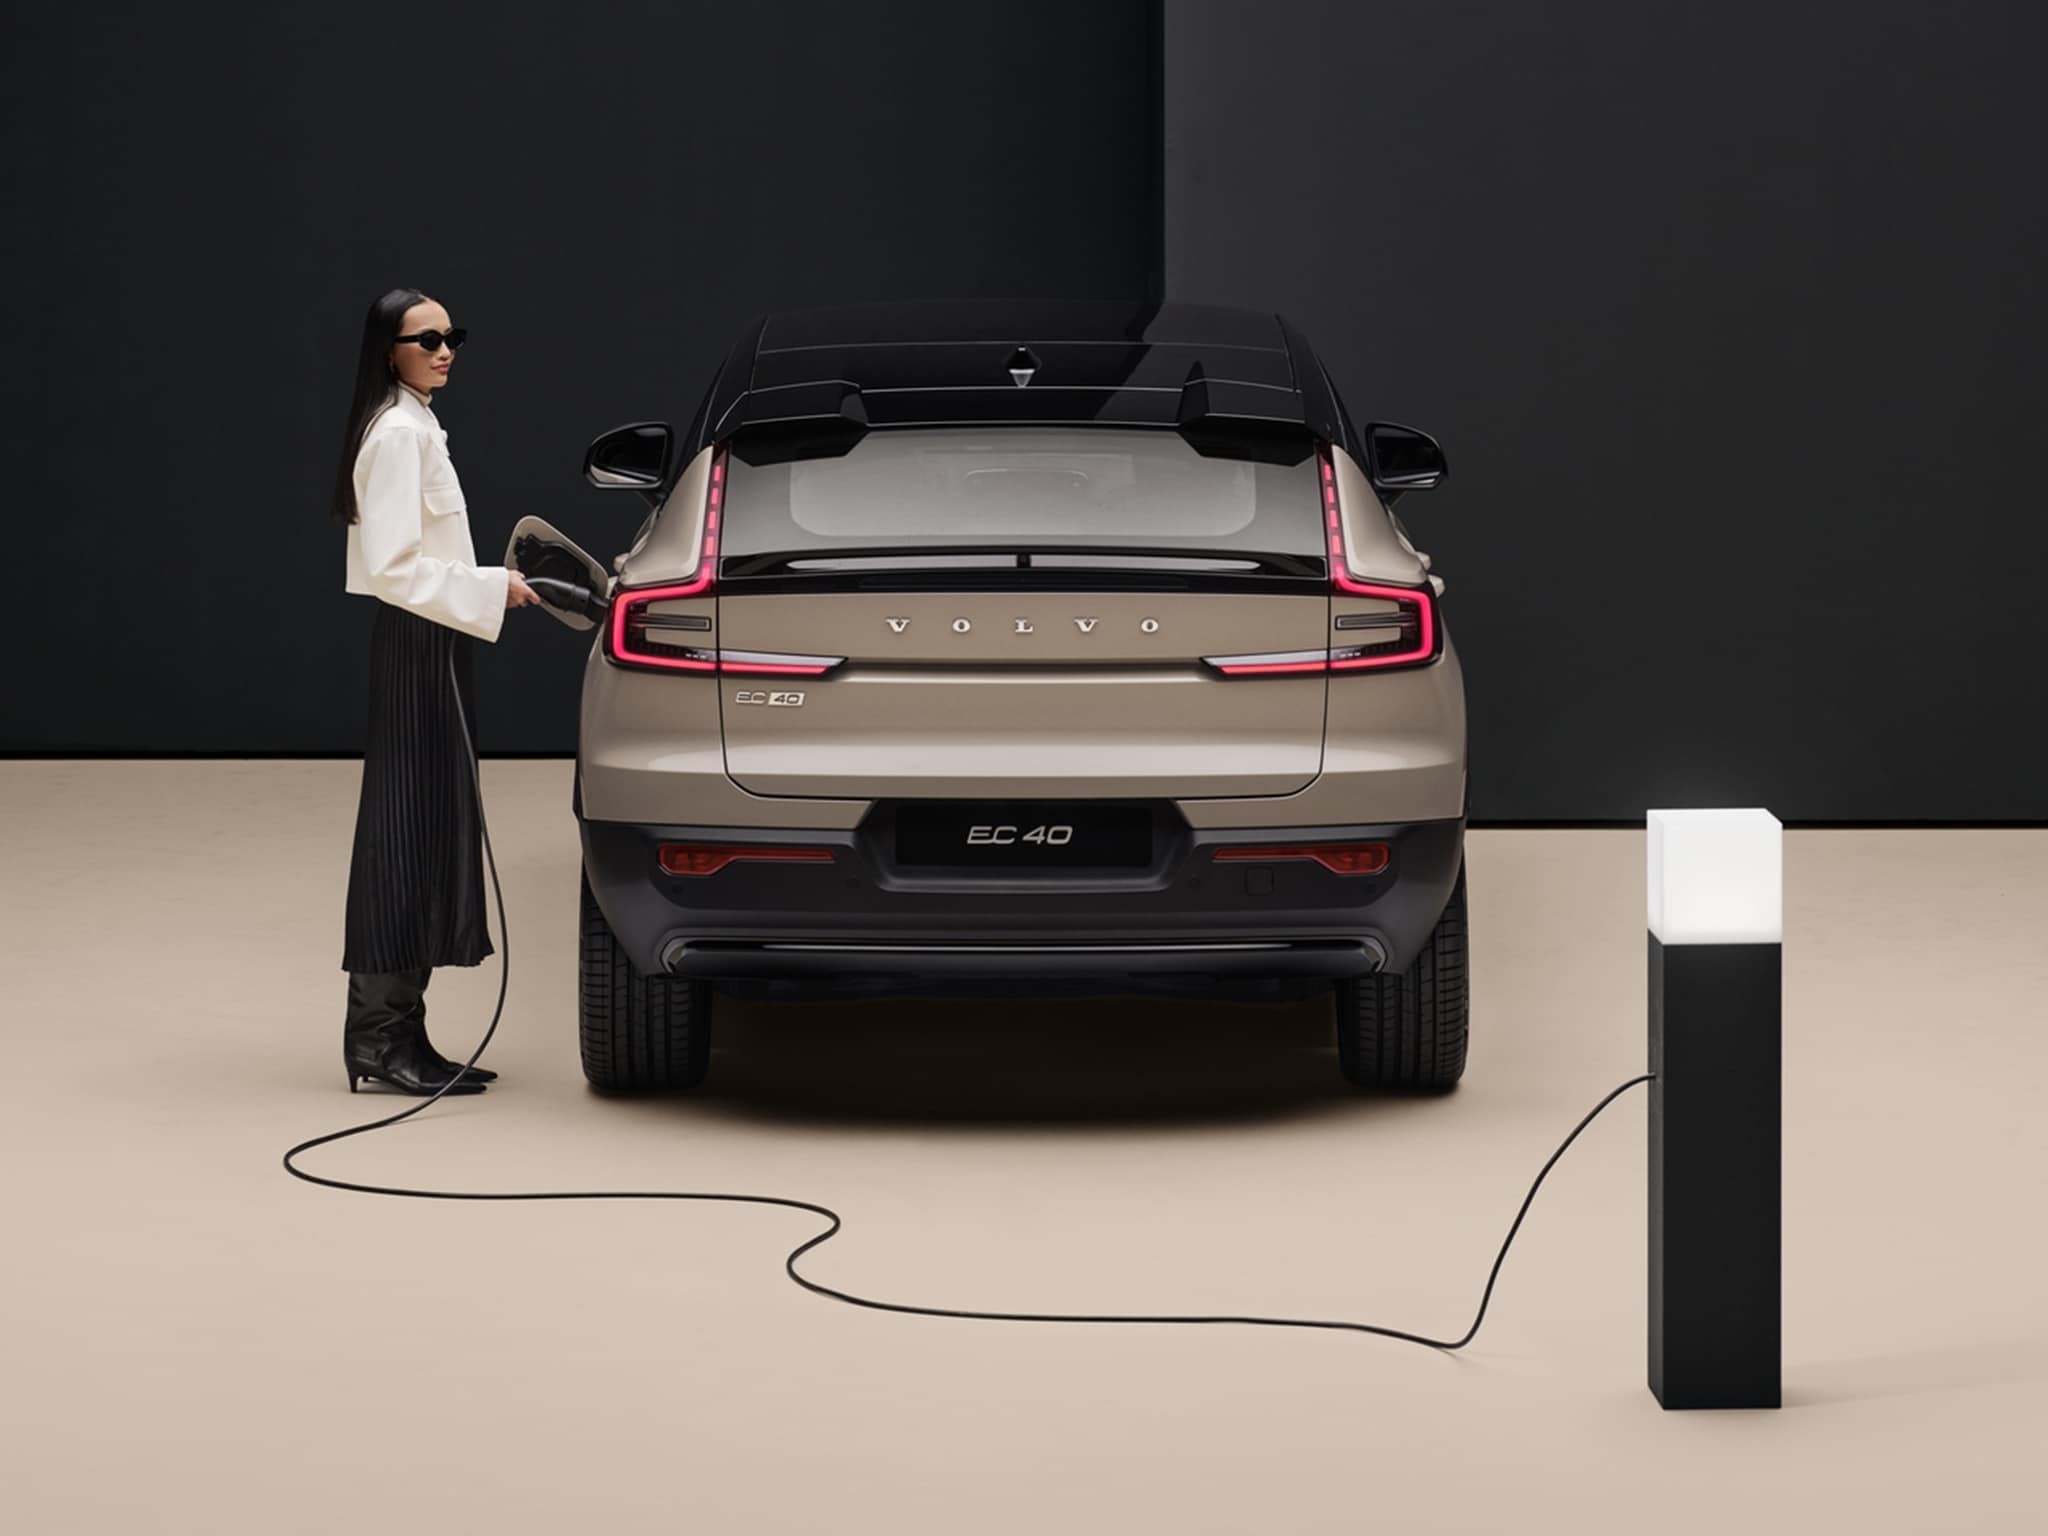 Nainen pitää kiinni Sand Dune -väriseen Volvo EC40 autoon kytketystä lataupistokkeesta. 